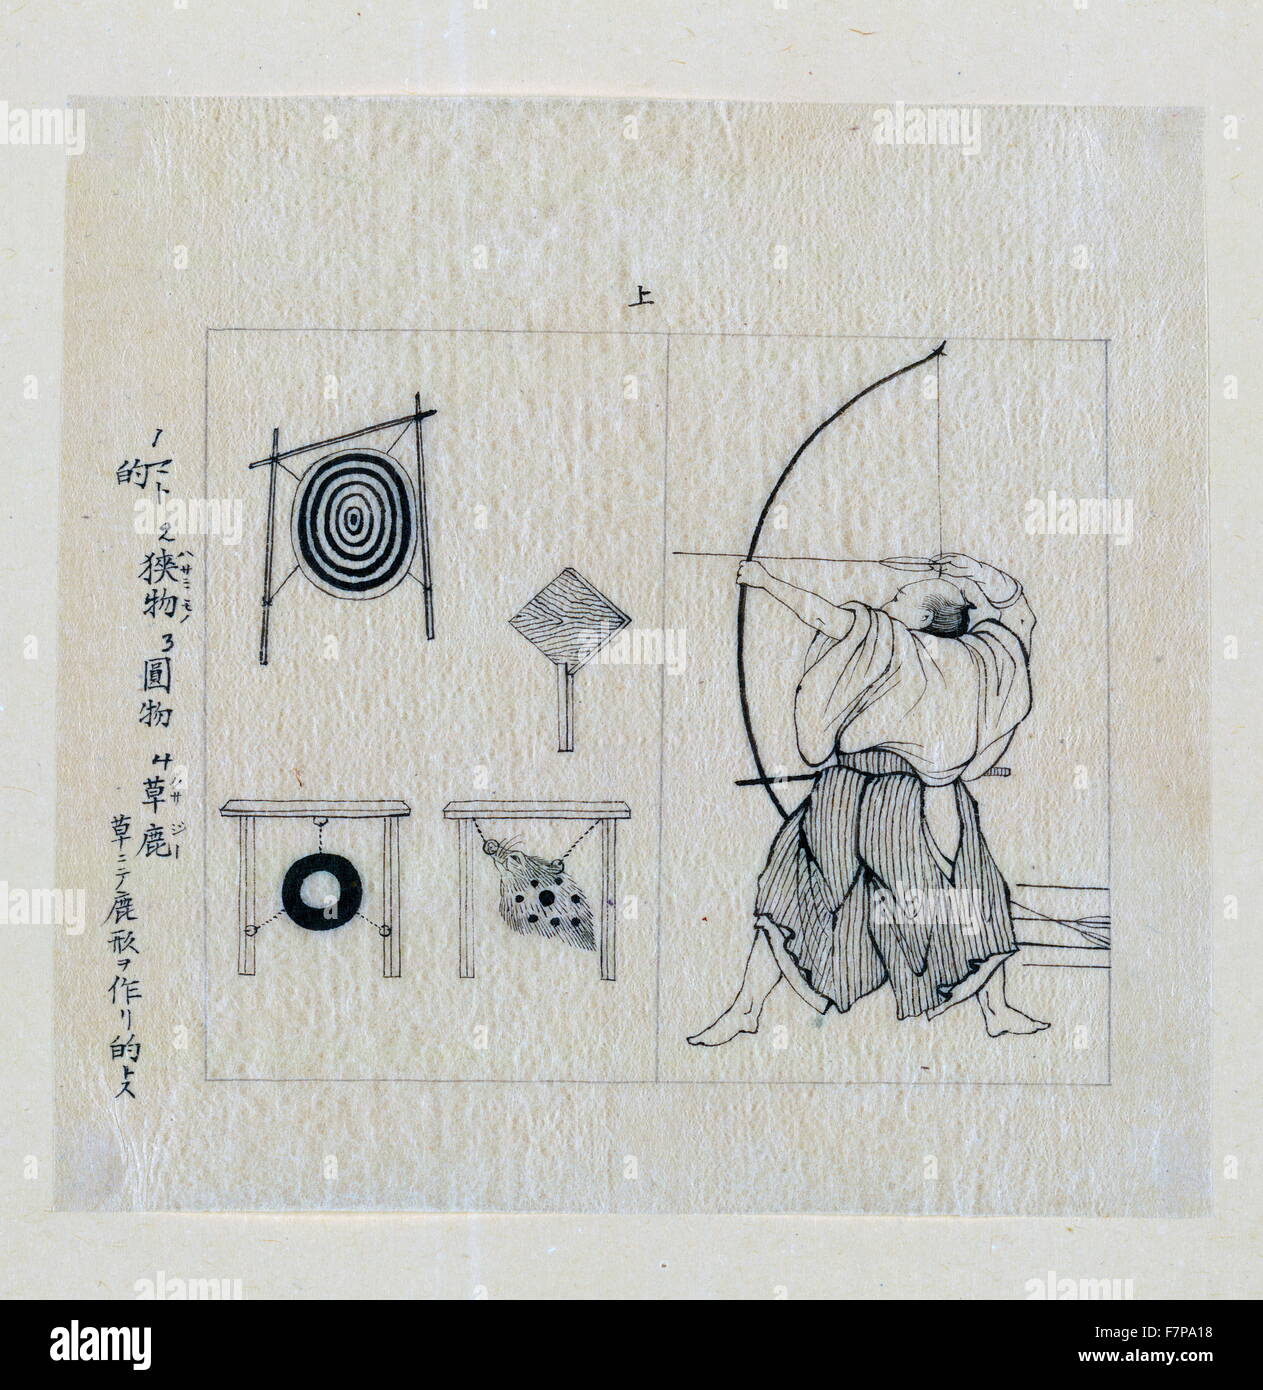 Krieger, Album, nach links, mit Bogen gezeichnet, etwa zu einem Pfeil schießen umfasst mehrere Arten des Ziels. Tusche-Zeichnung Stockfoto